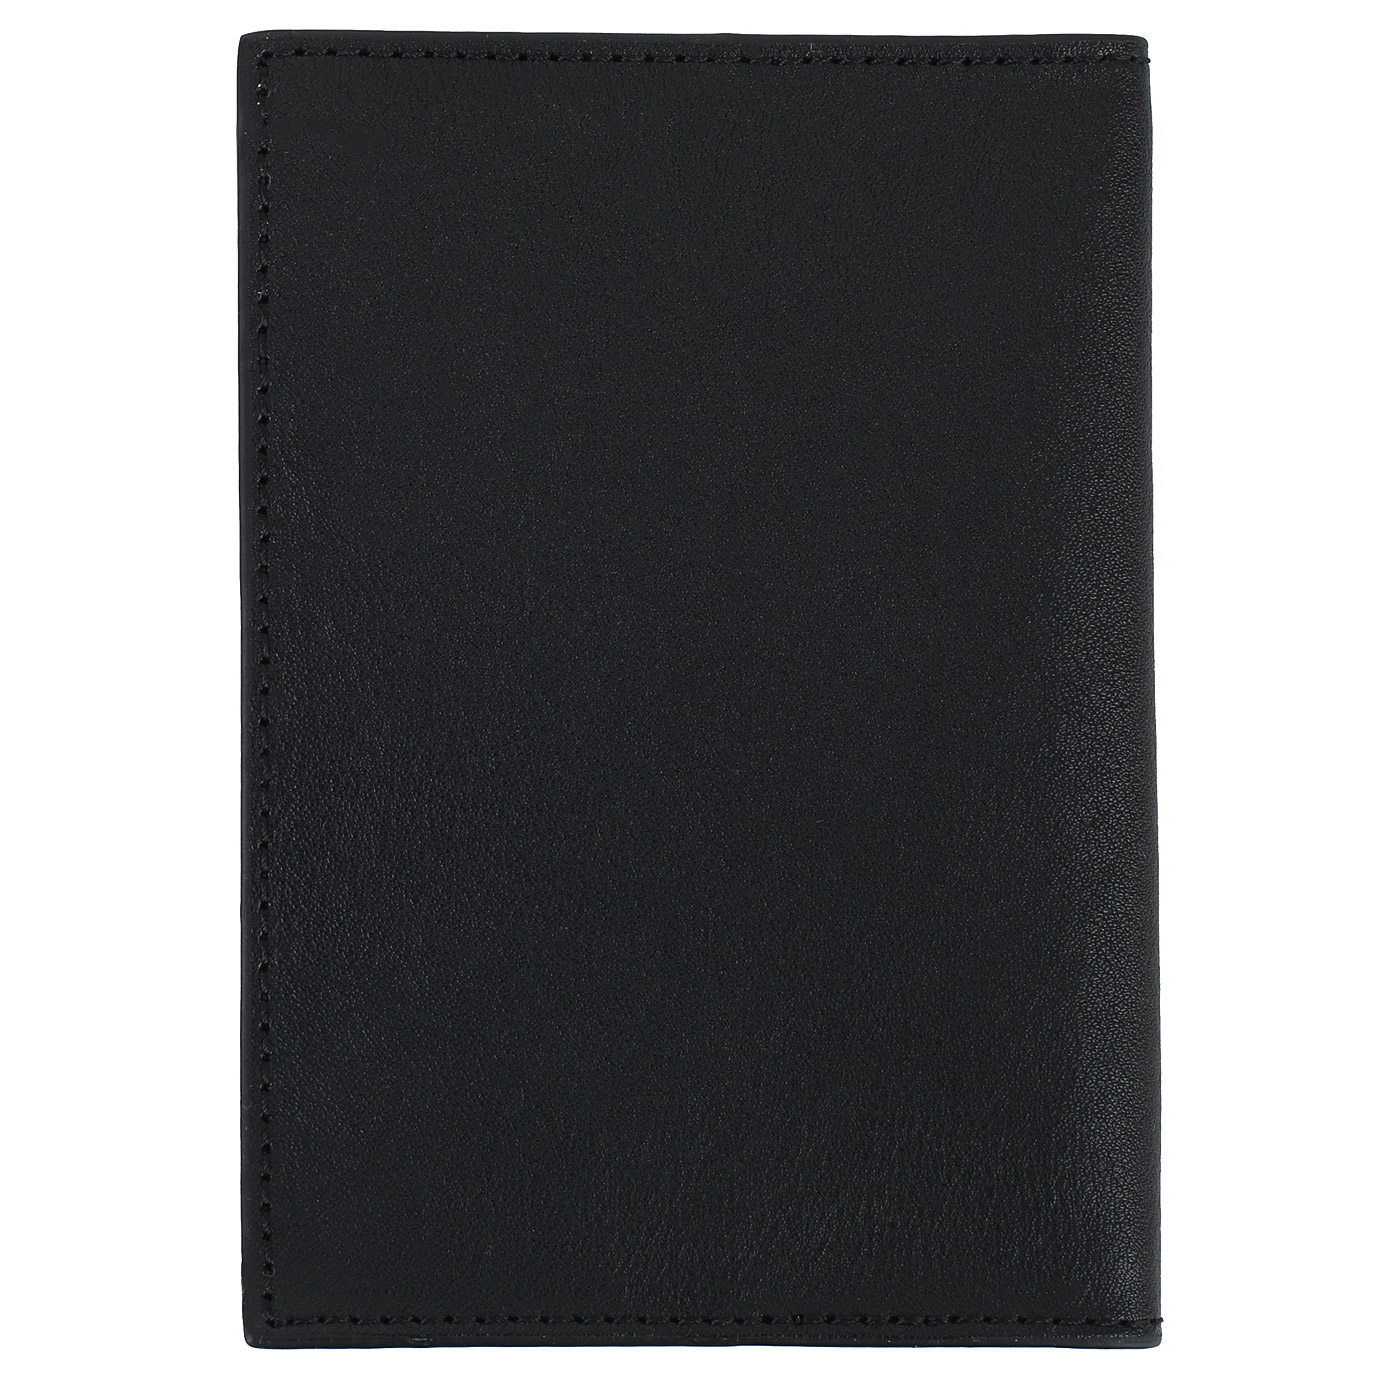 Кожаная обложка для паспорта Piquadro Black square